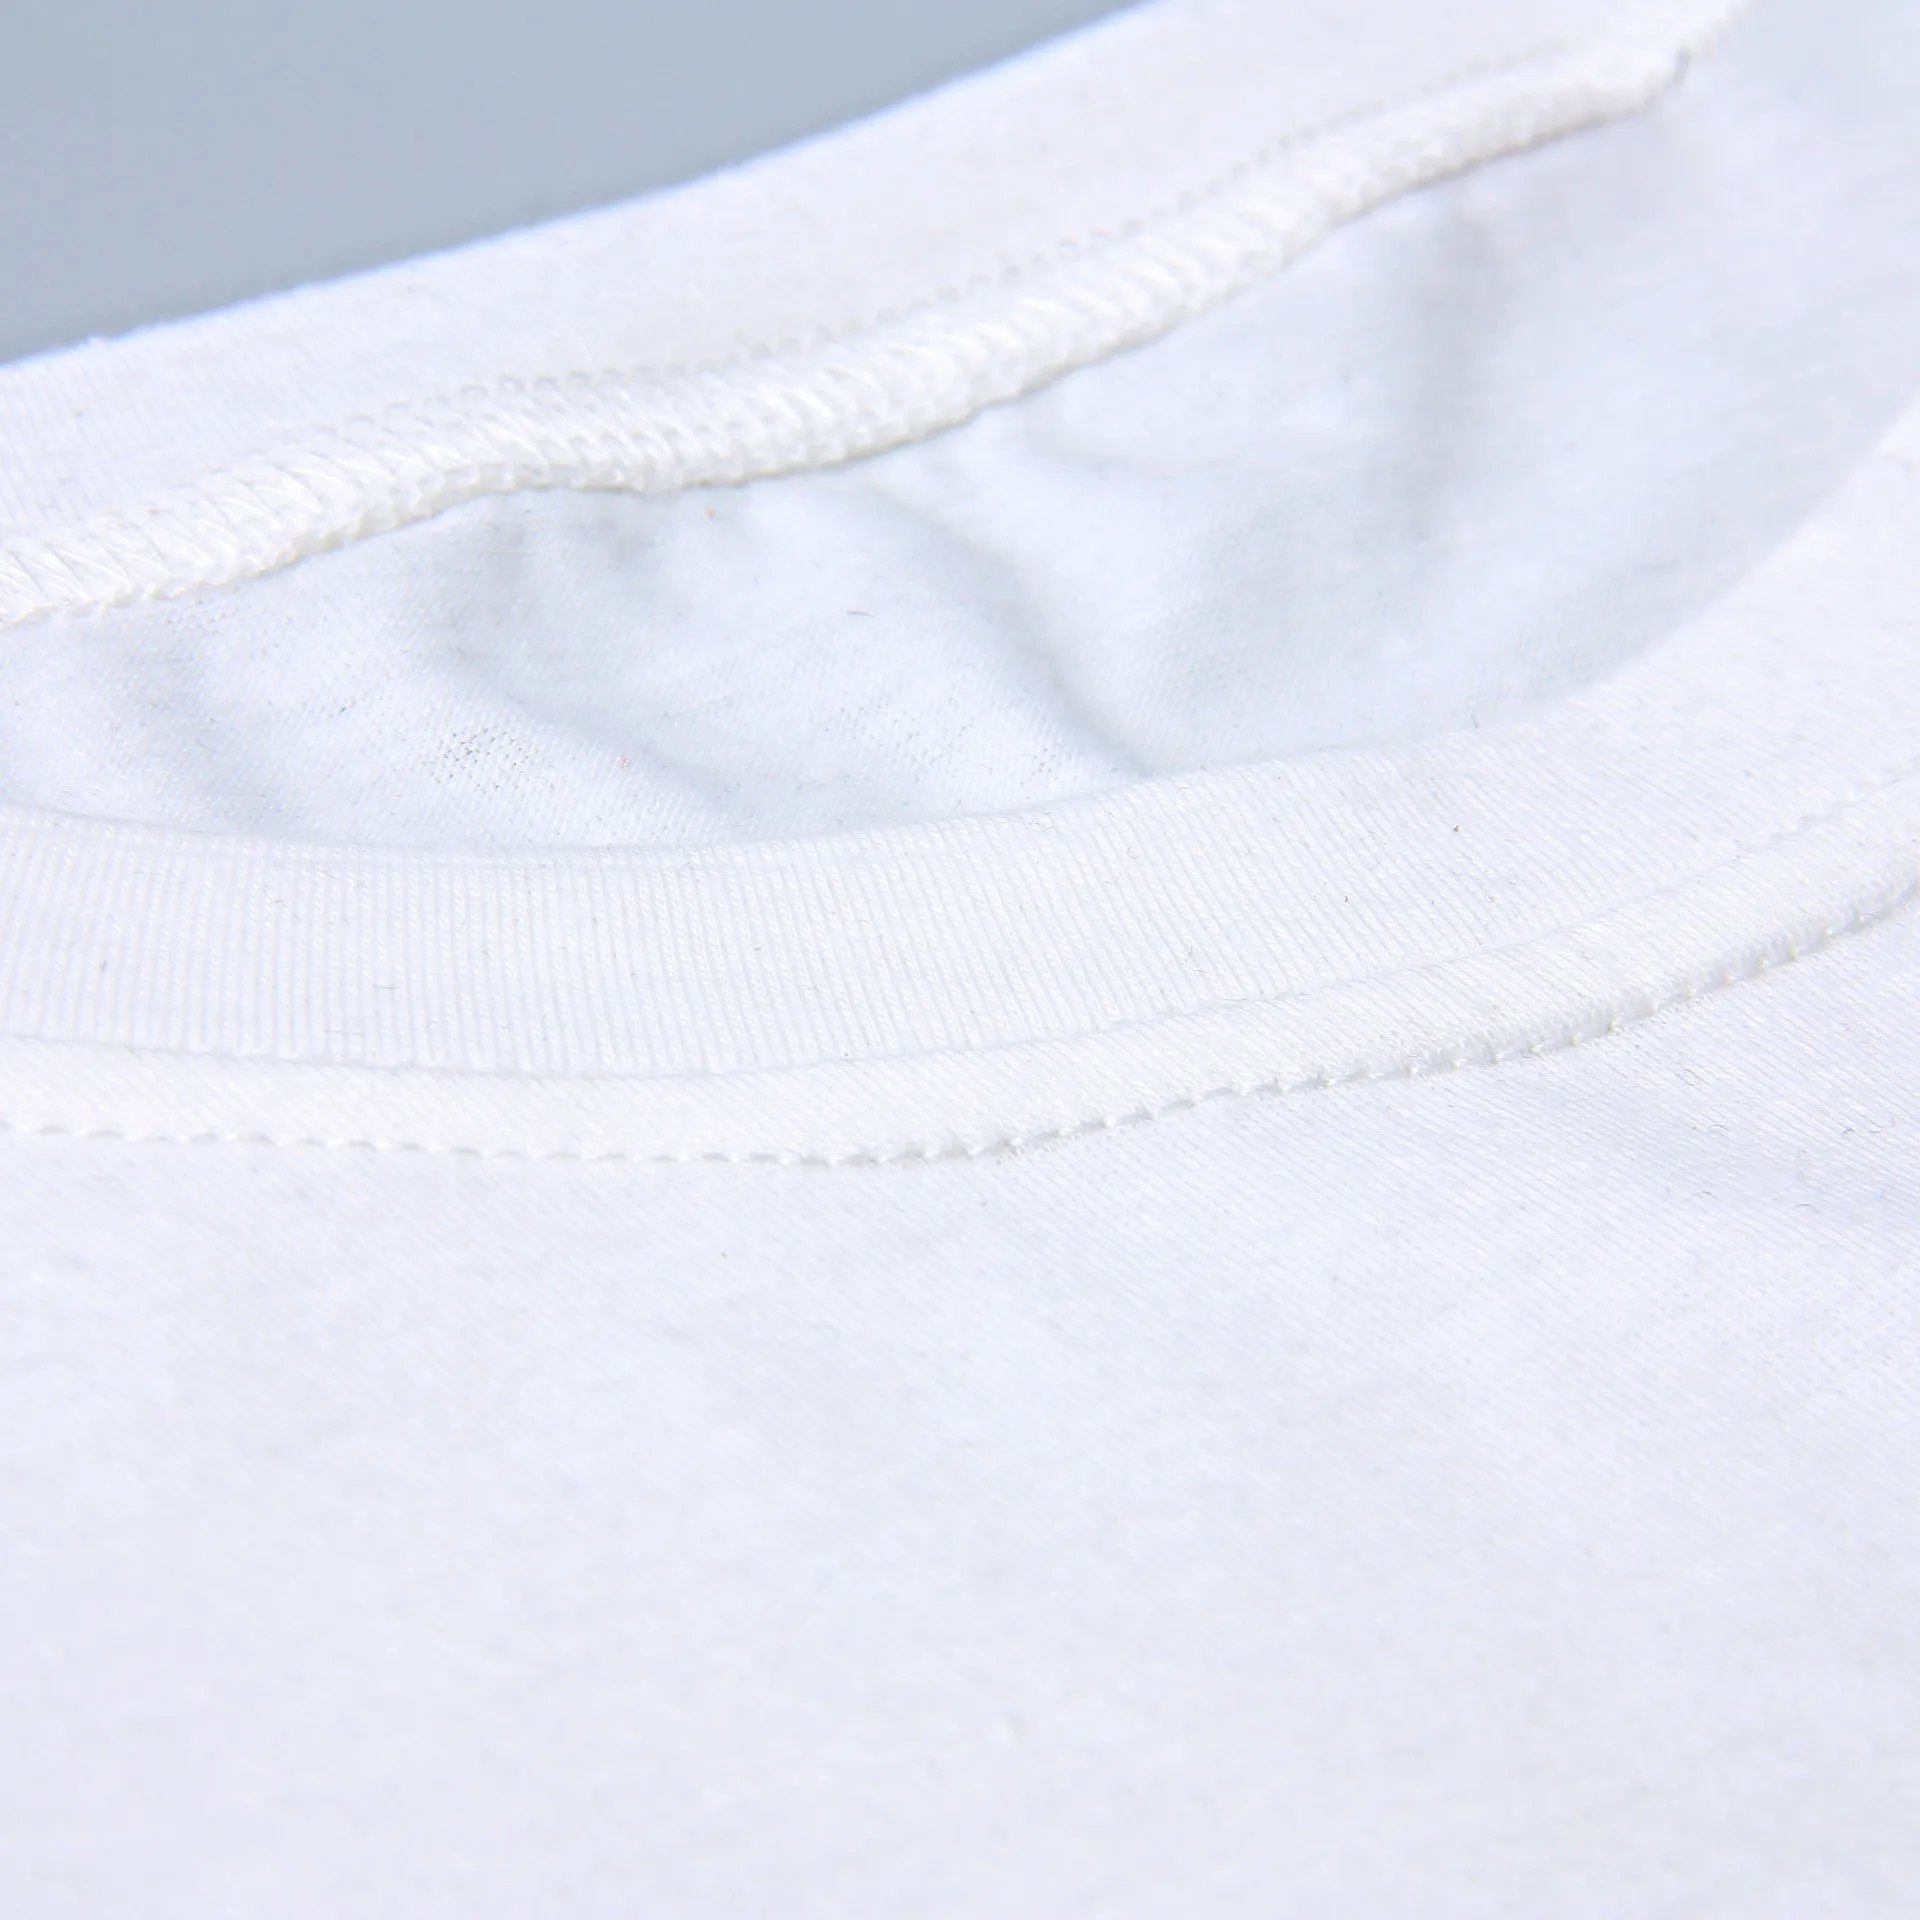 Друзья футболка с буквенным принтом Для женщин короткий рукав с круглым вырезом свободные футболки Лето Для женщин белая футболка топы Camisetas Mujer